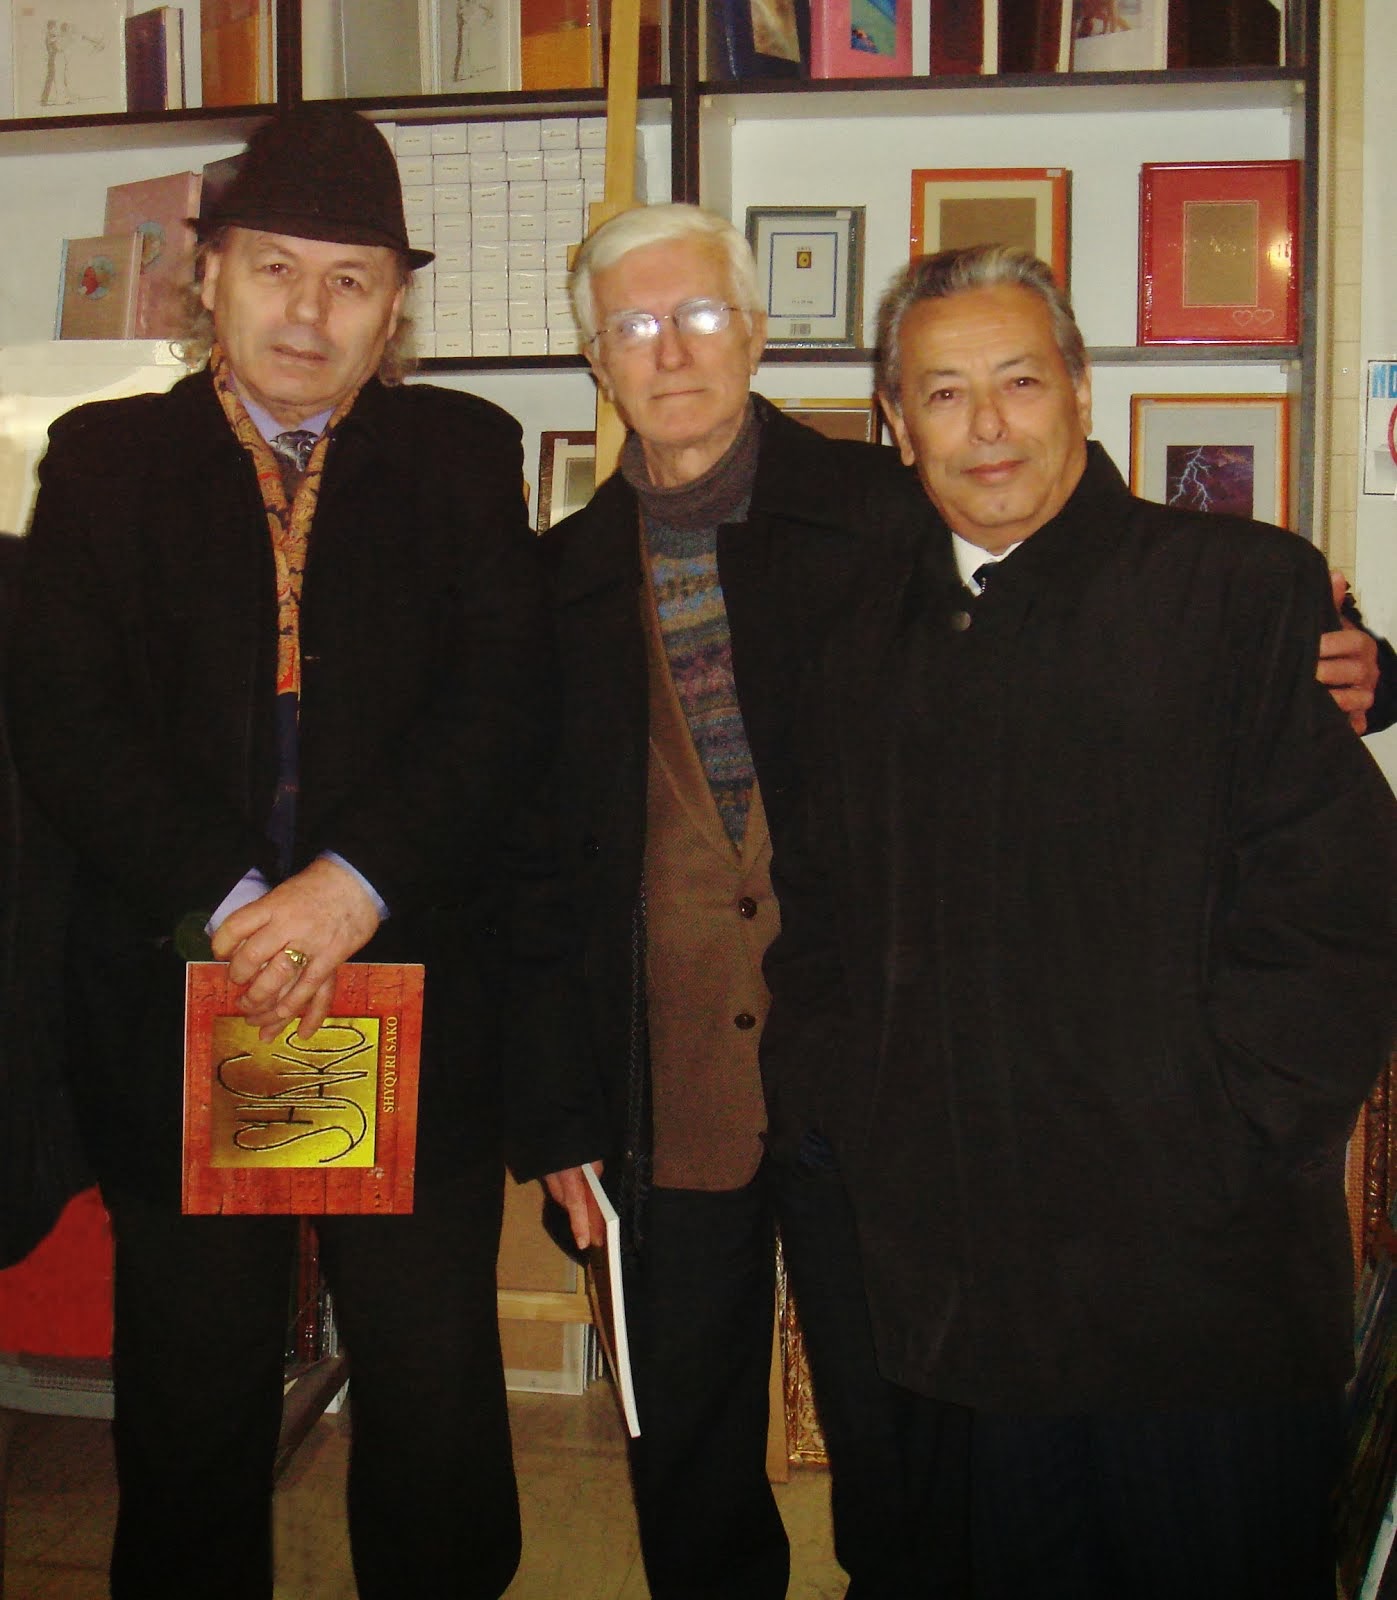 Në Galerinë "Kledio" dhjetor 2013